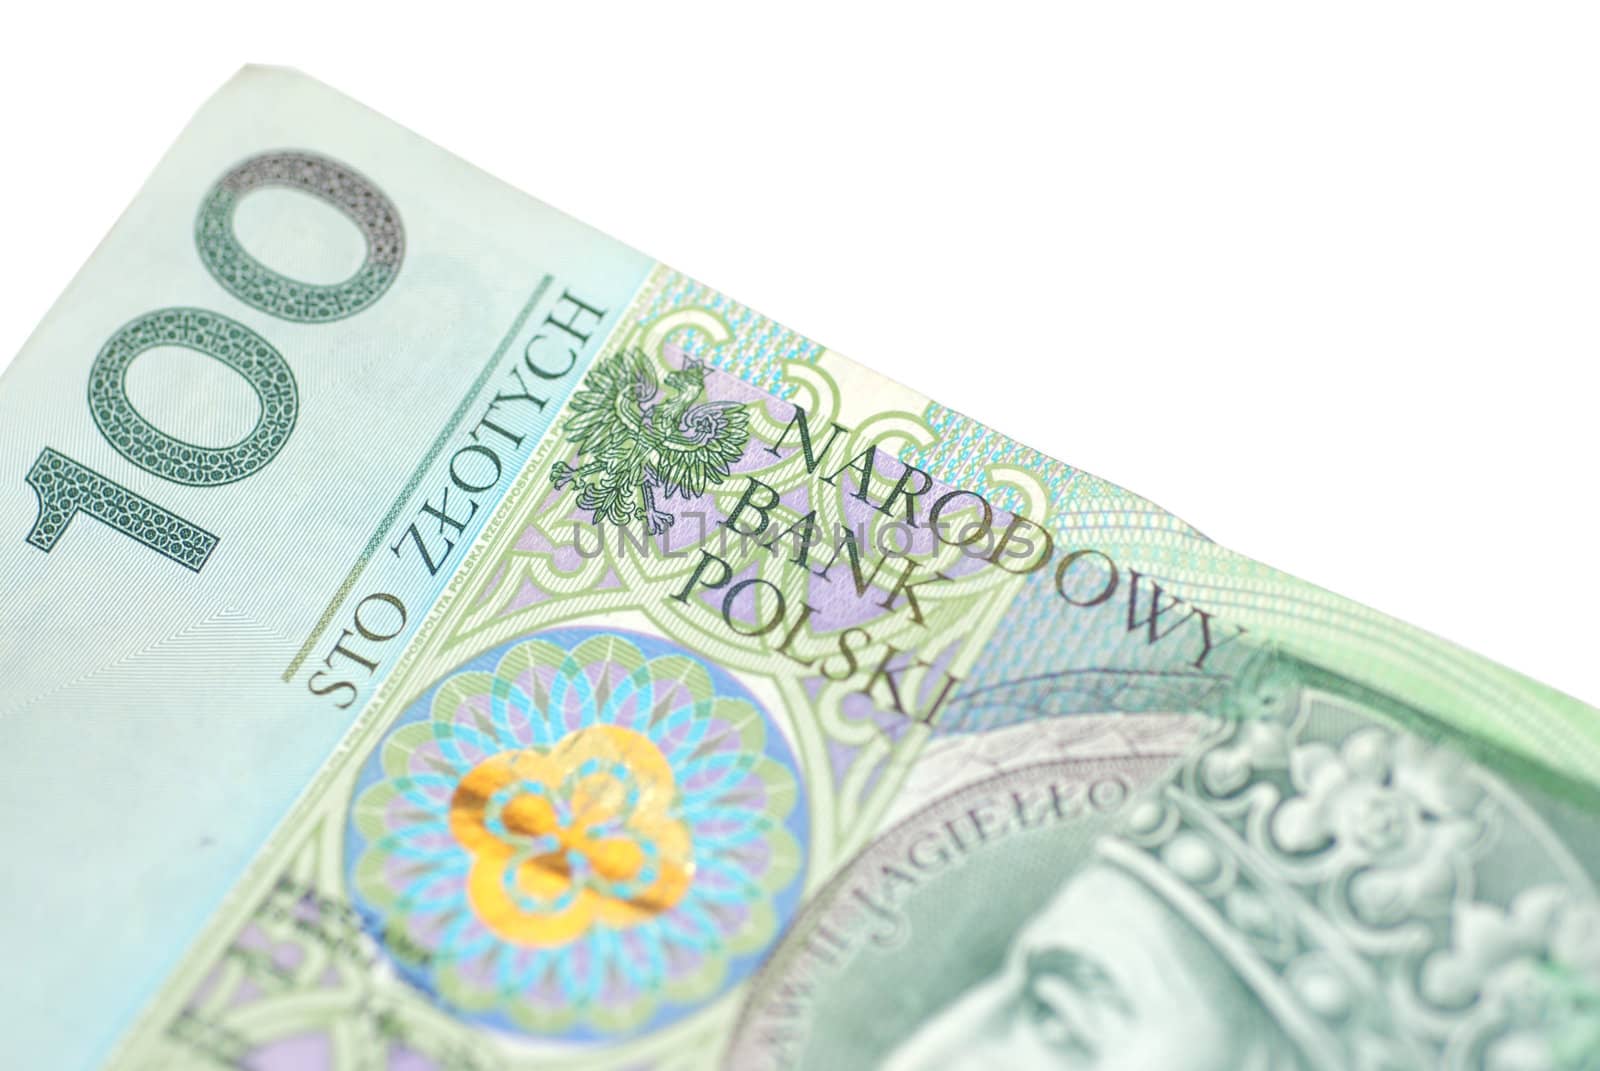 PLN 100 banknote.